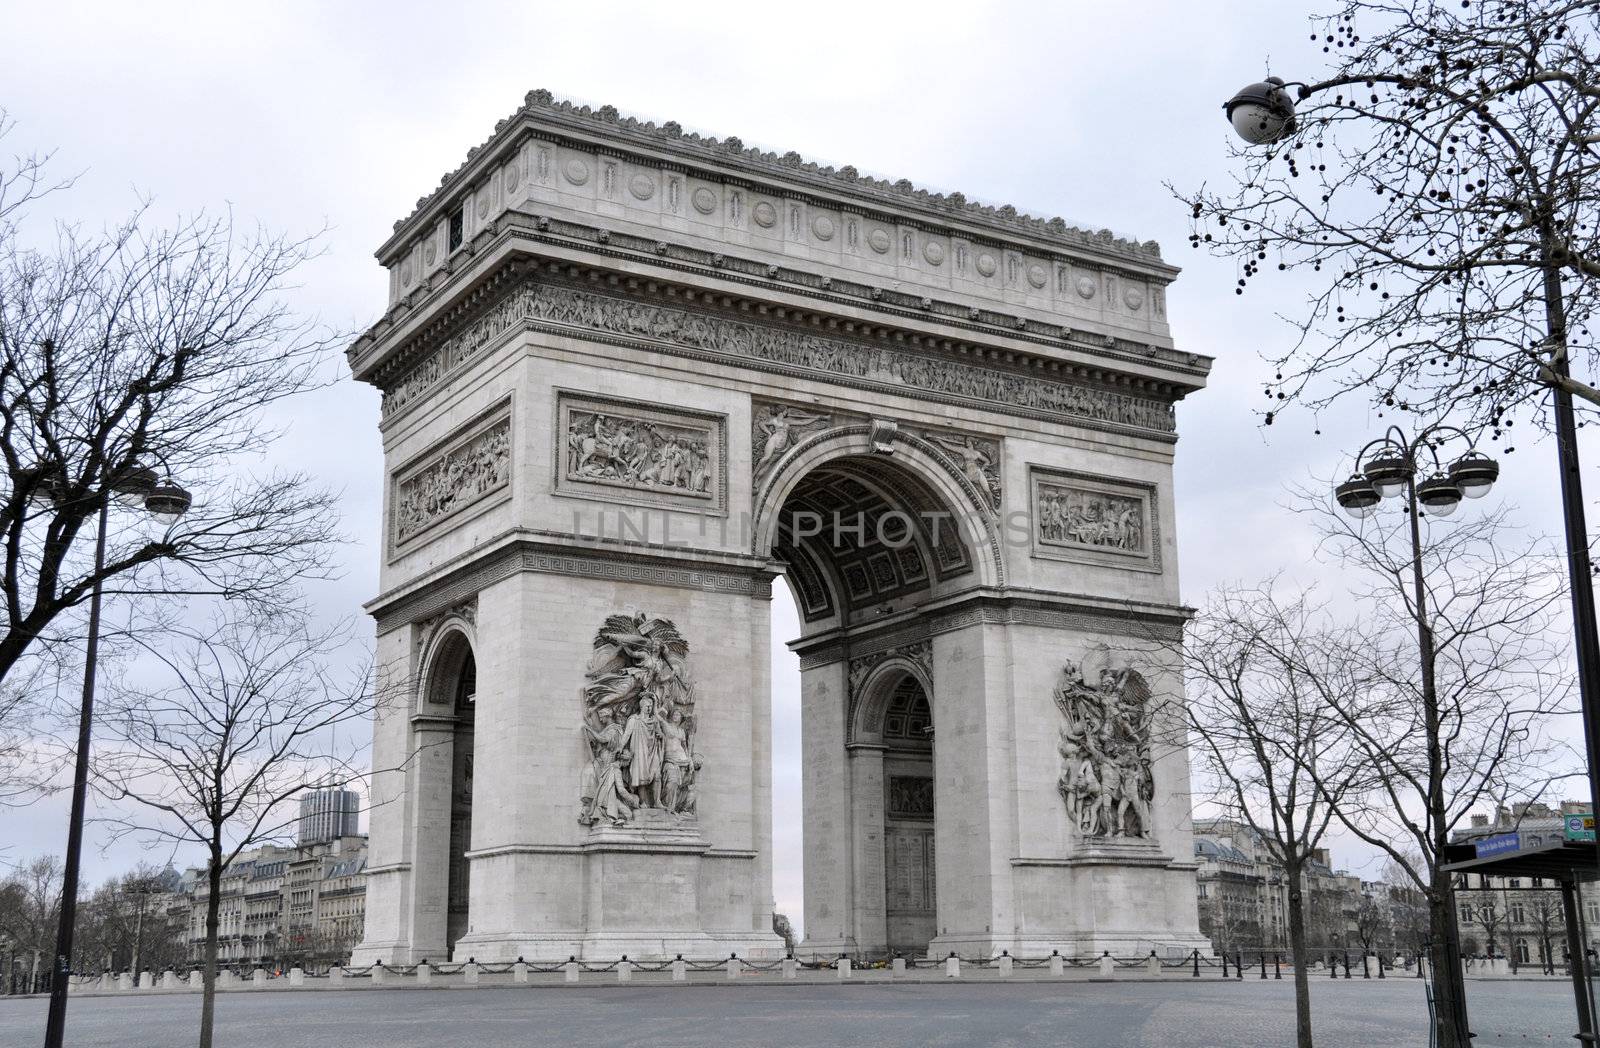 The Arc de Triomphe in Paris by dutourdumonde